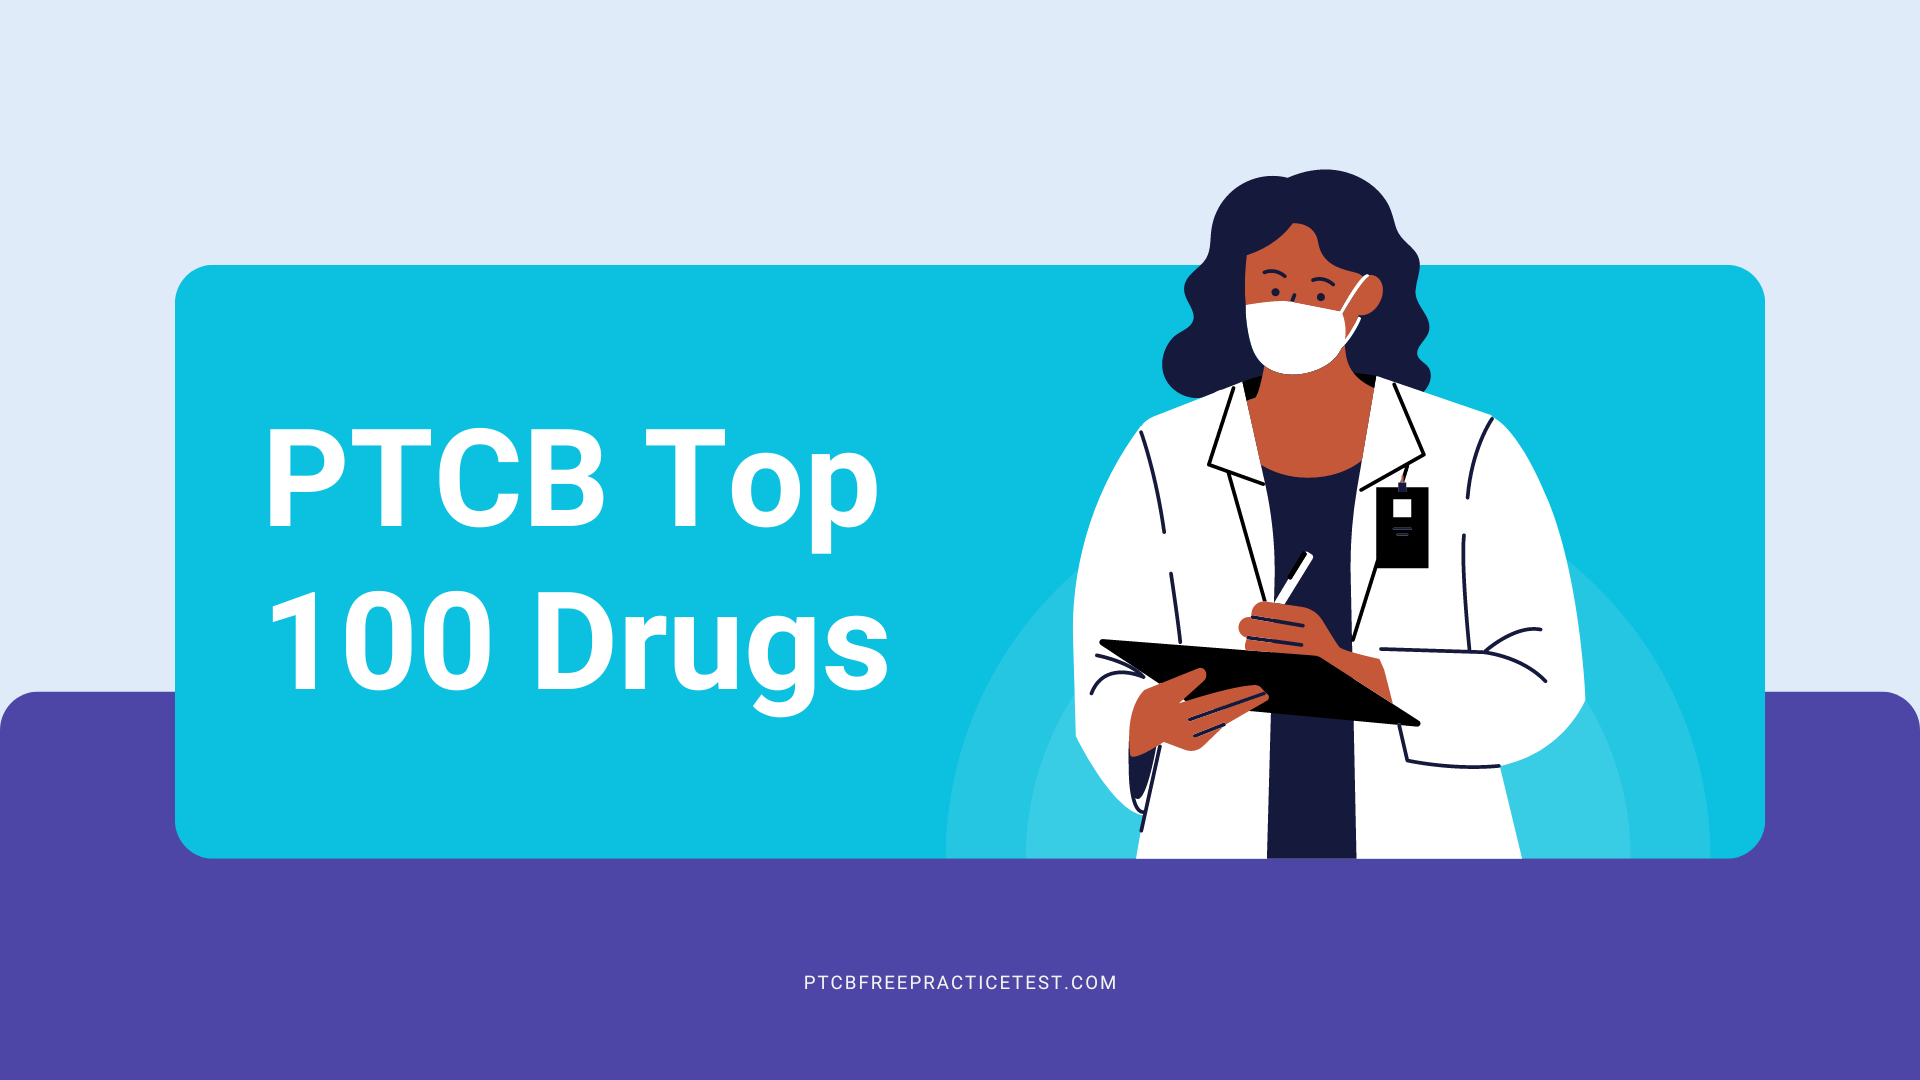 PTCB Top 100 Drugs